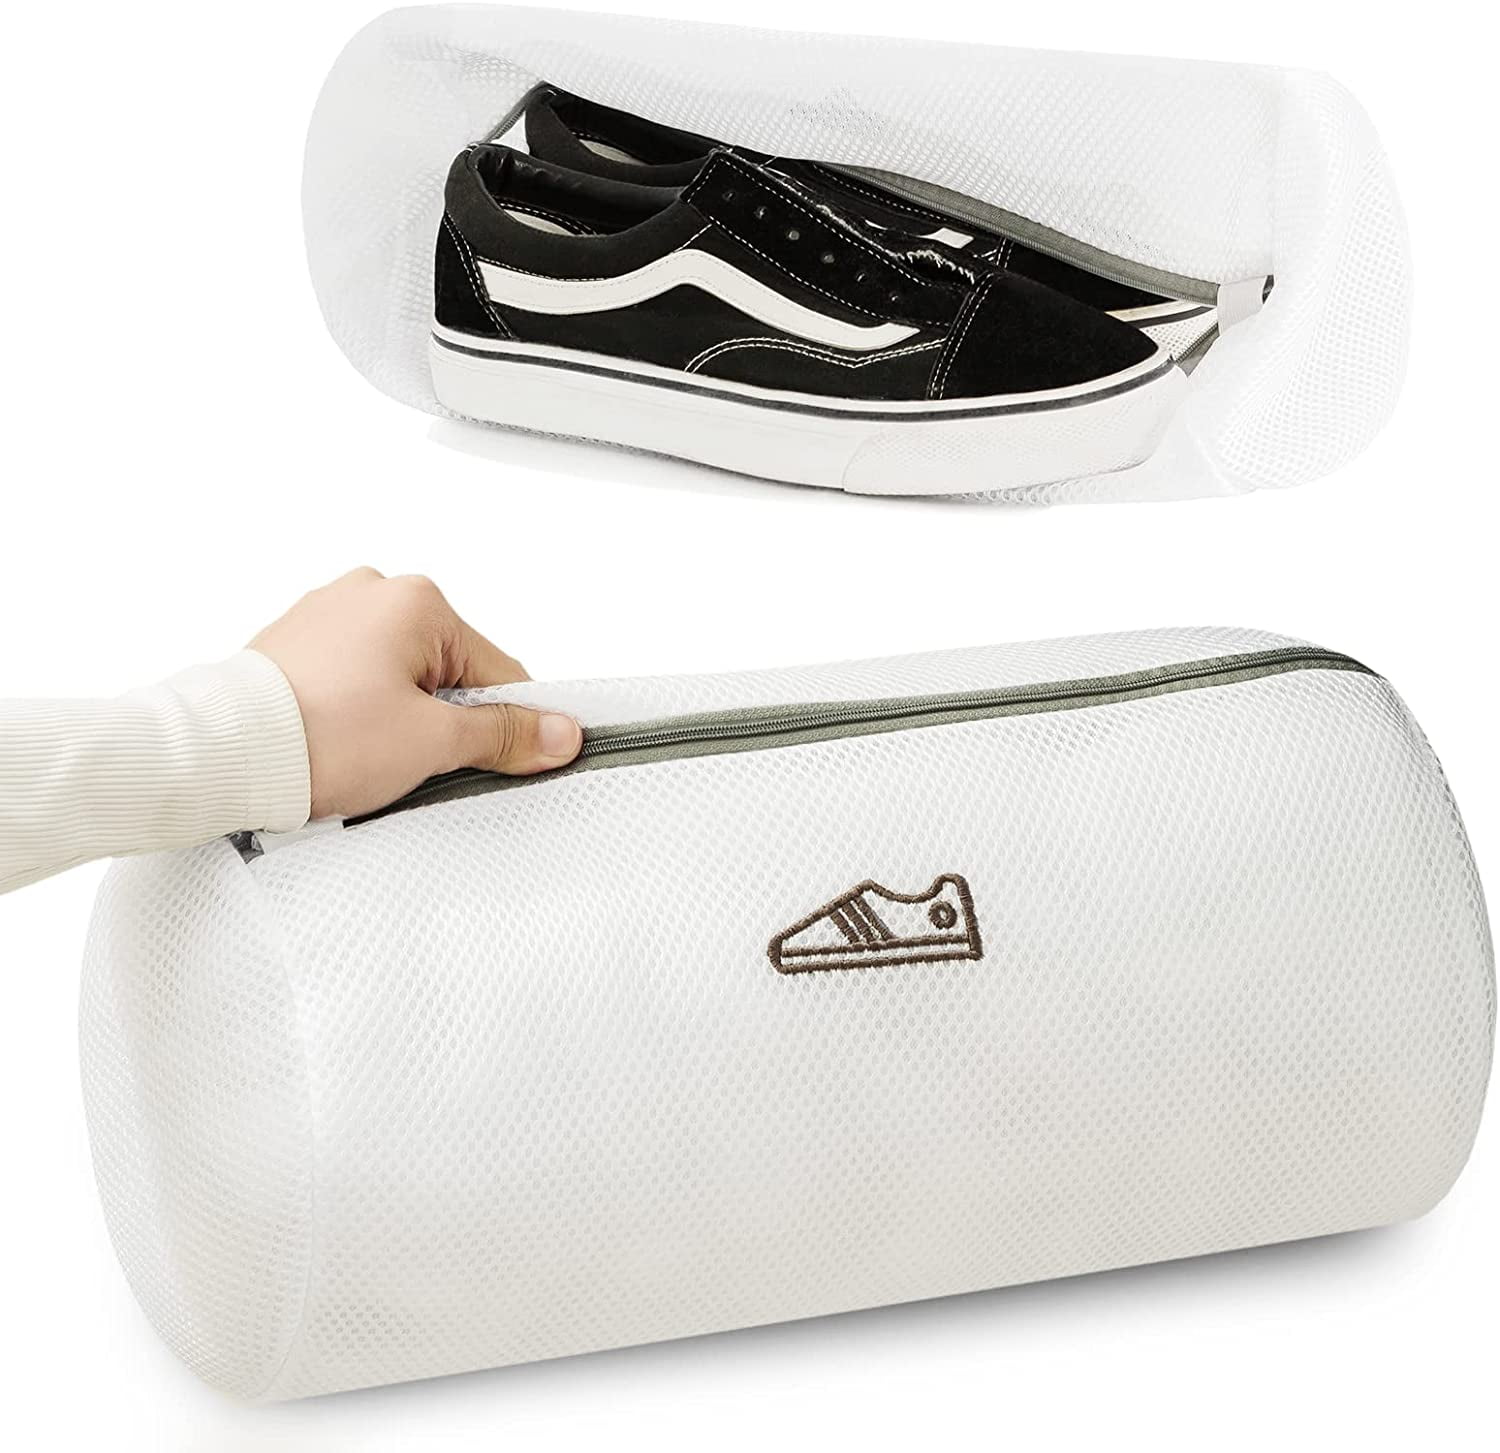 Sneaker Laundry Bag Footwear White Mesh Washing Bag for Gentle Washing